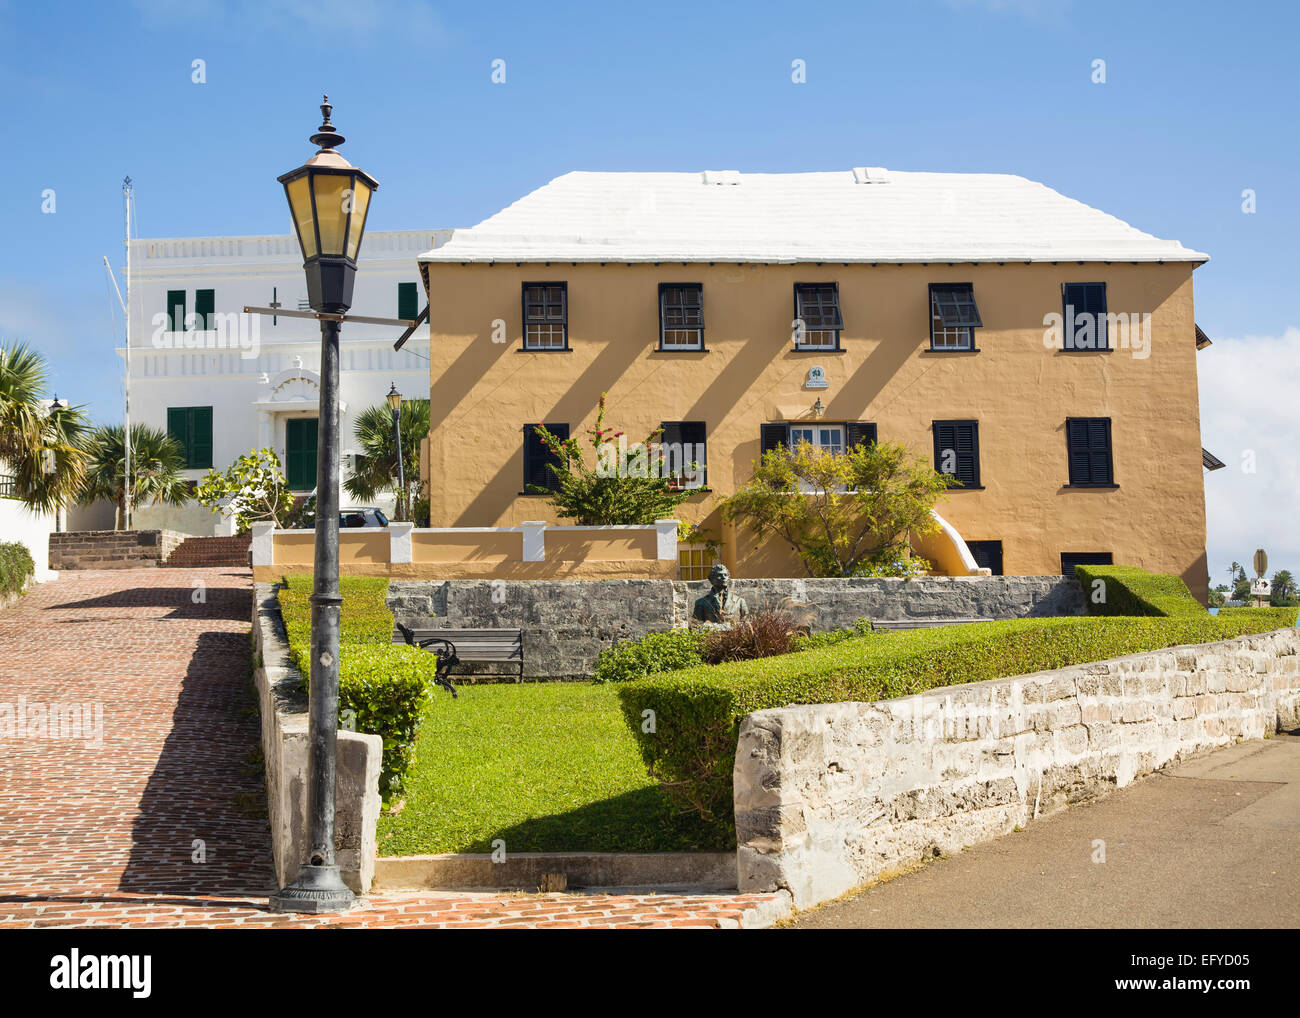 La route de brique rouge et Old State House, st.George's, les Bermudes. le monument à le poète irlandais Thomas Moore dans le middleground. Banque D'Images